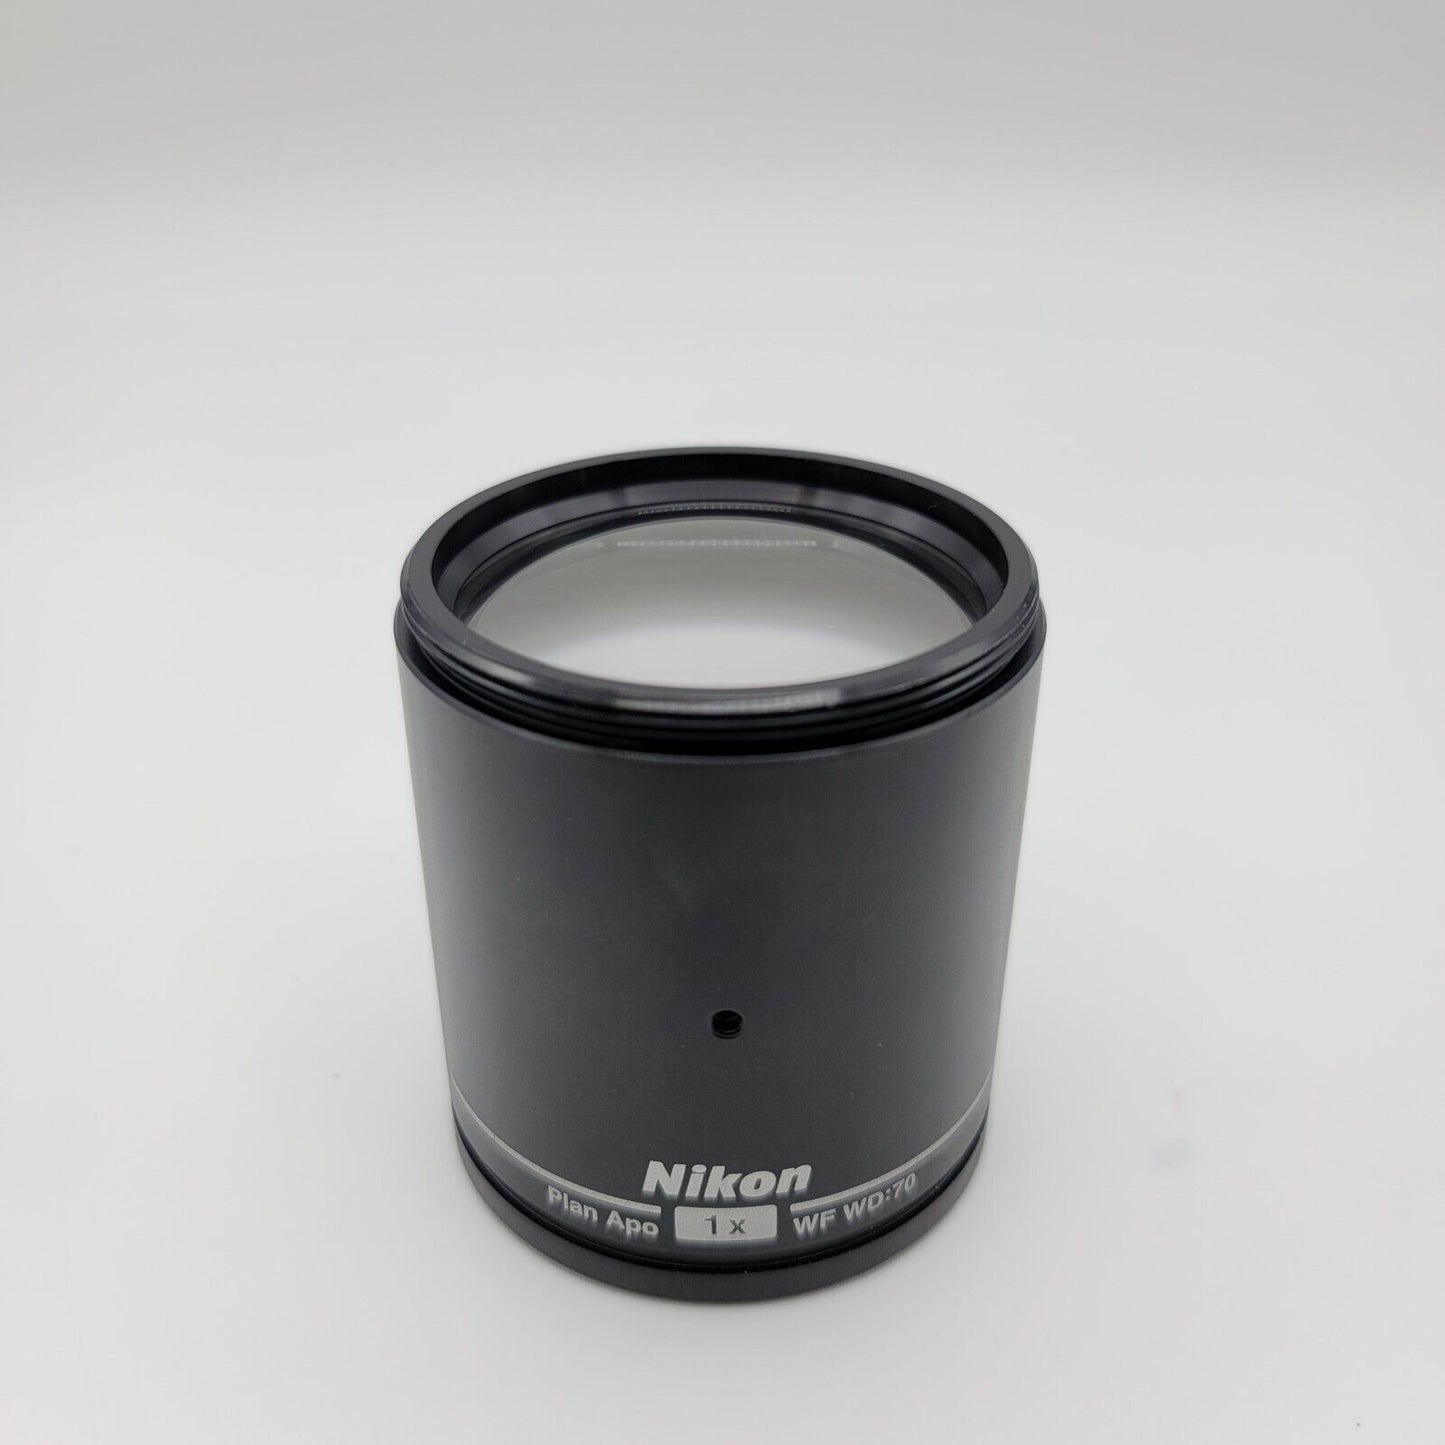 Nikon Microscope Plan Apo 1X For SMZ - microscopemarketplace